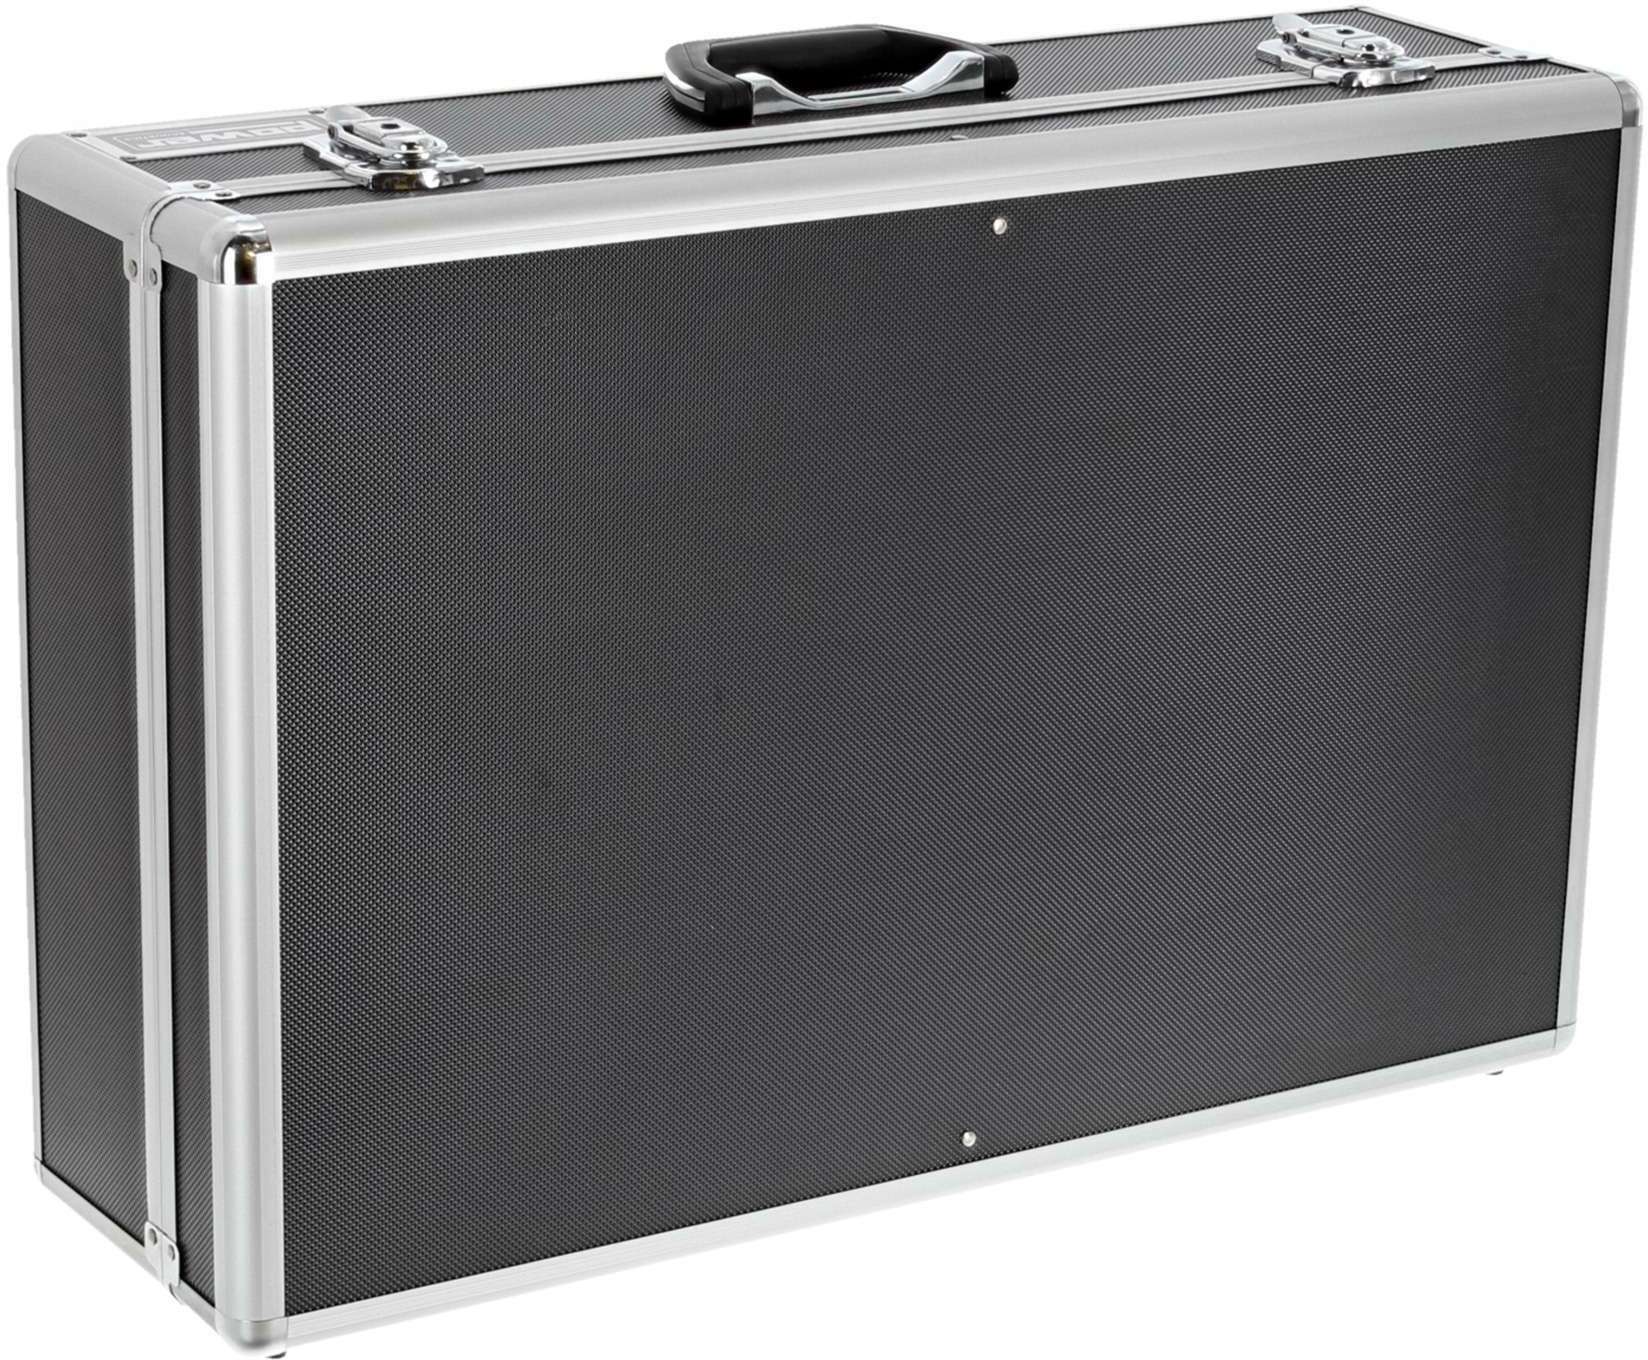 Power Acoustics Fl Mixer 4 Valise De Transport Pour Mixeur - Cases for mixing desk - Main picture